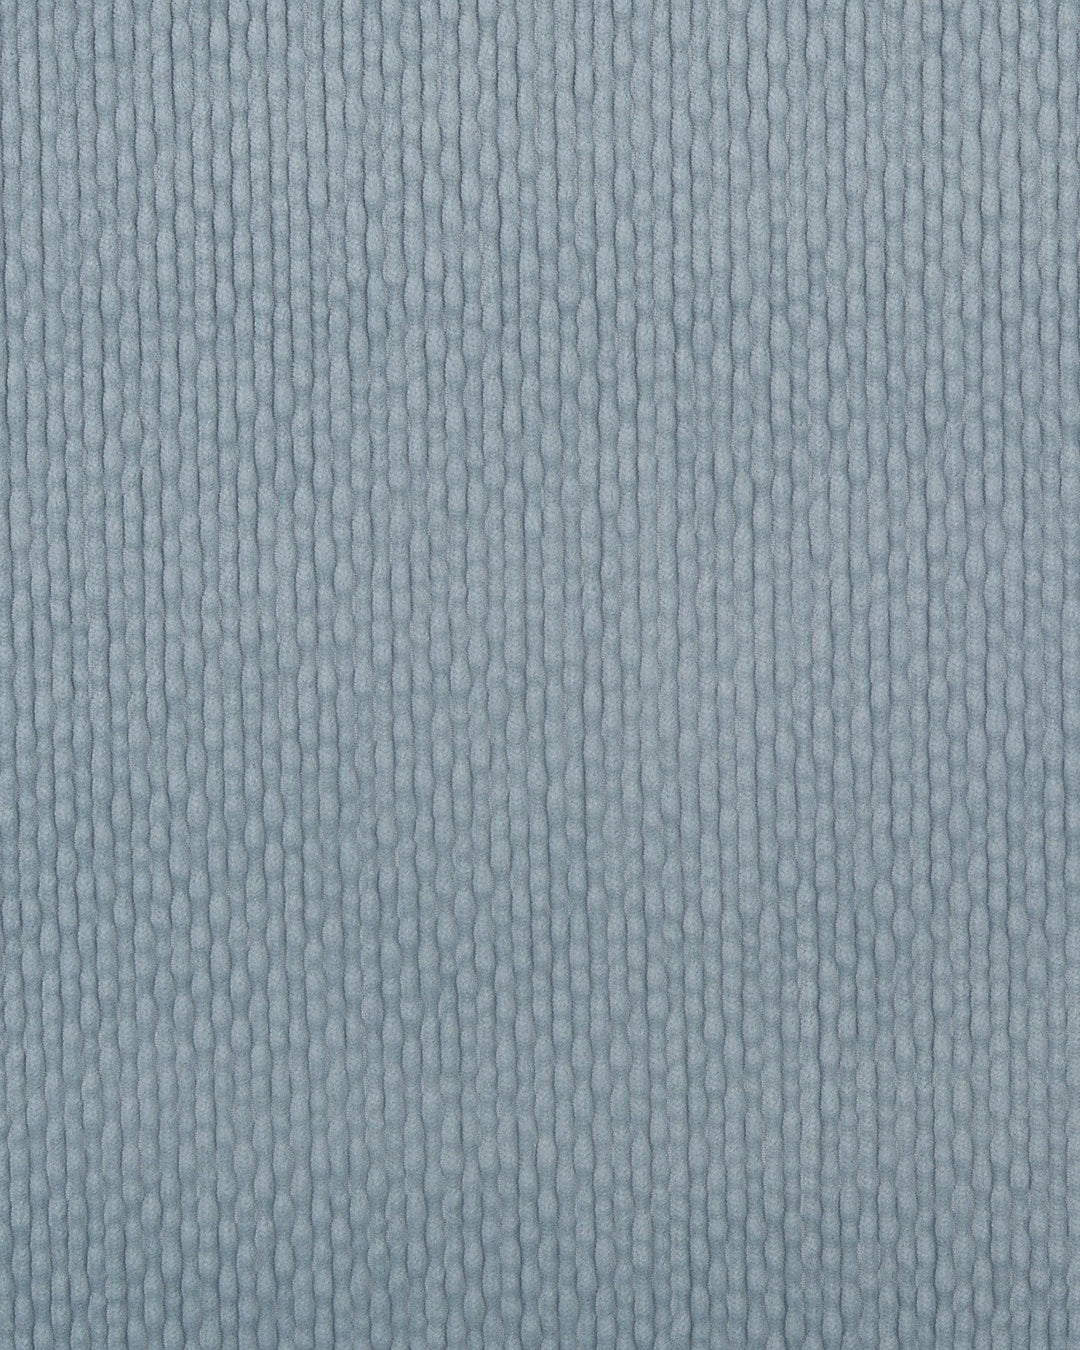 Modrone Corduroy Seersucker Bluish-Gray -8 Wale